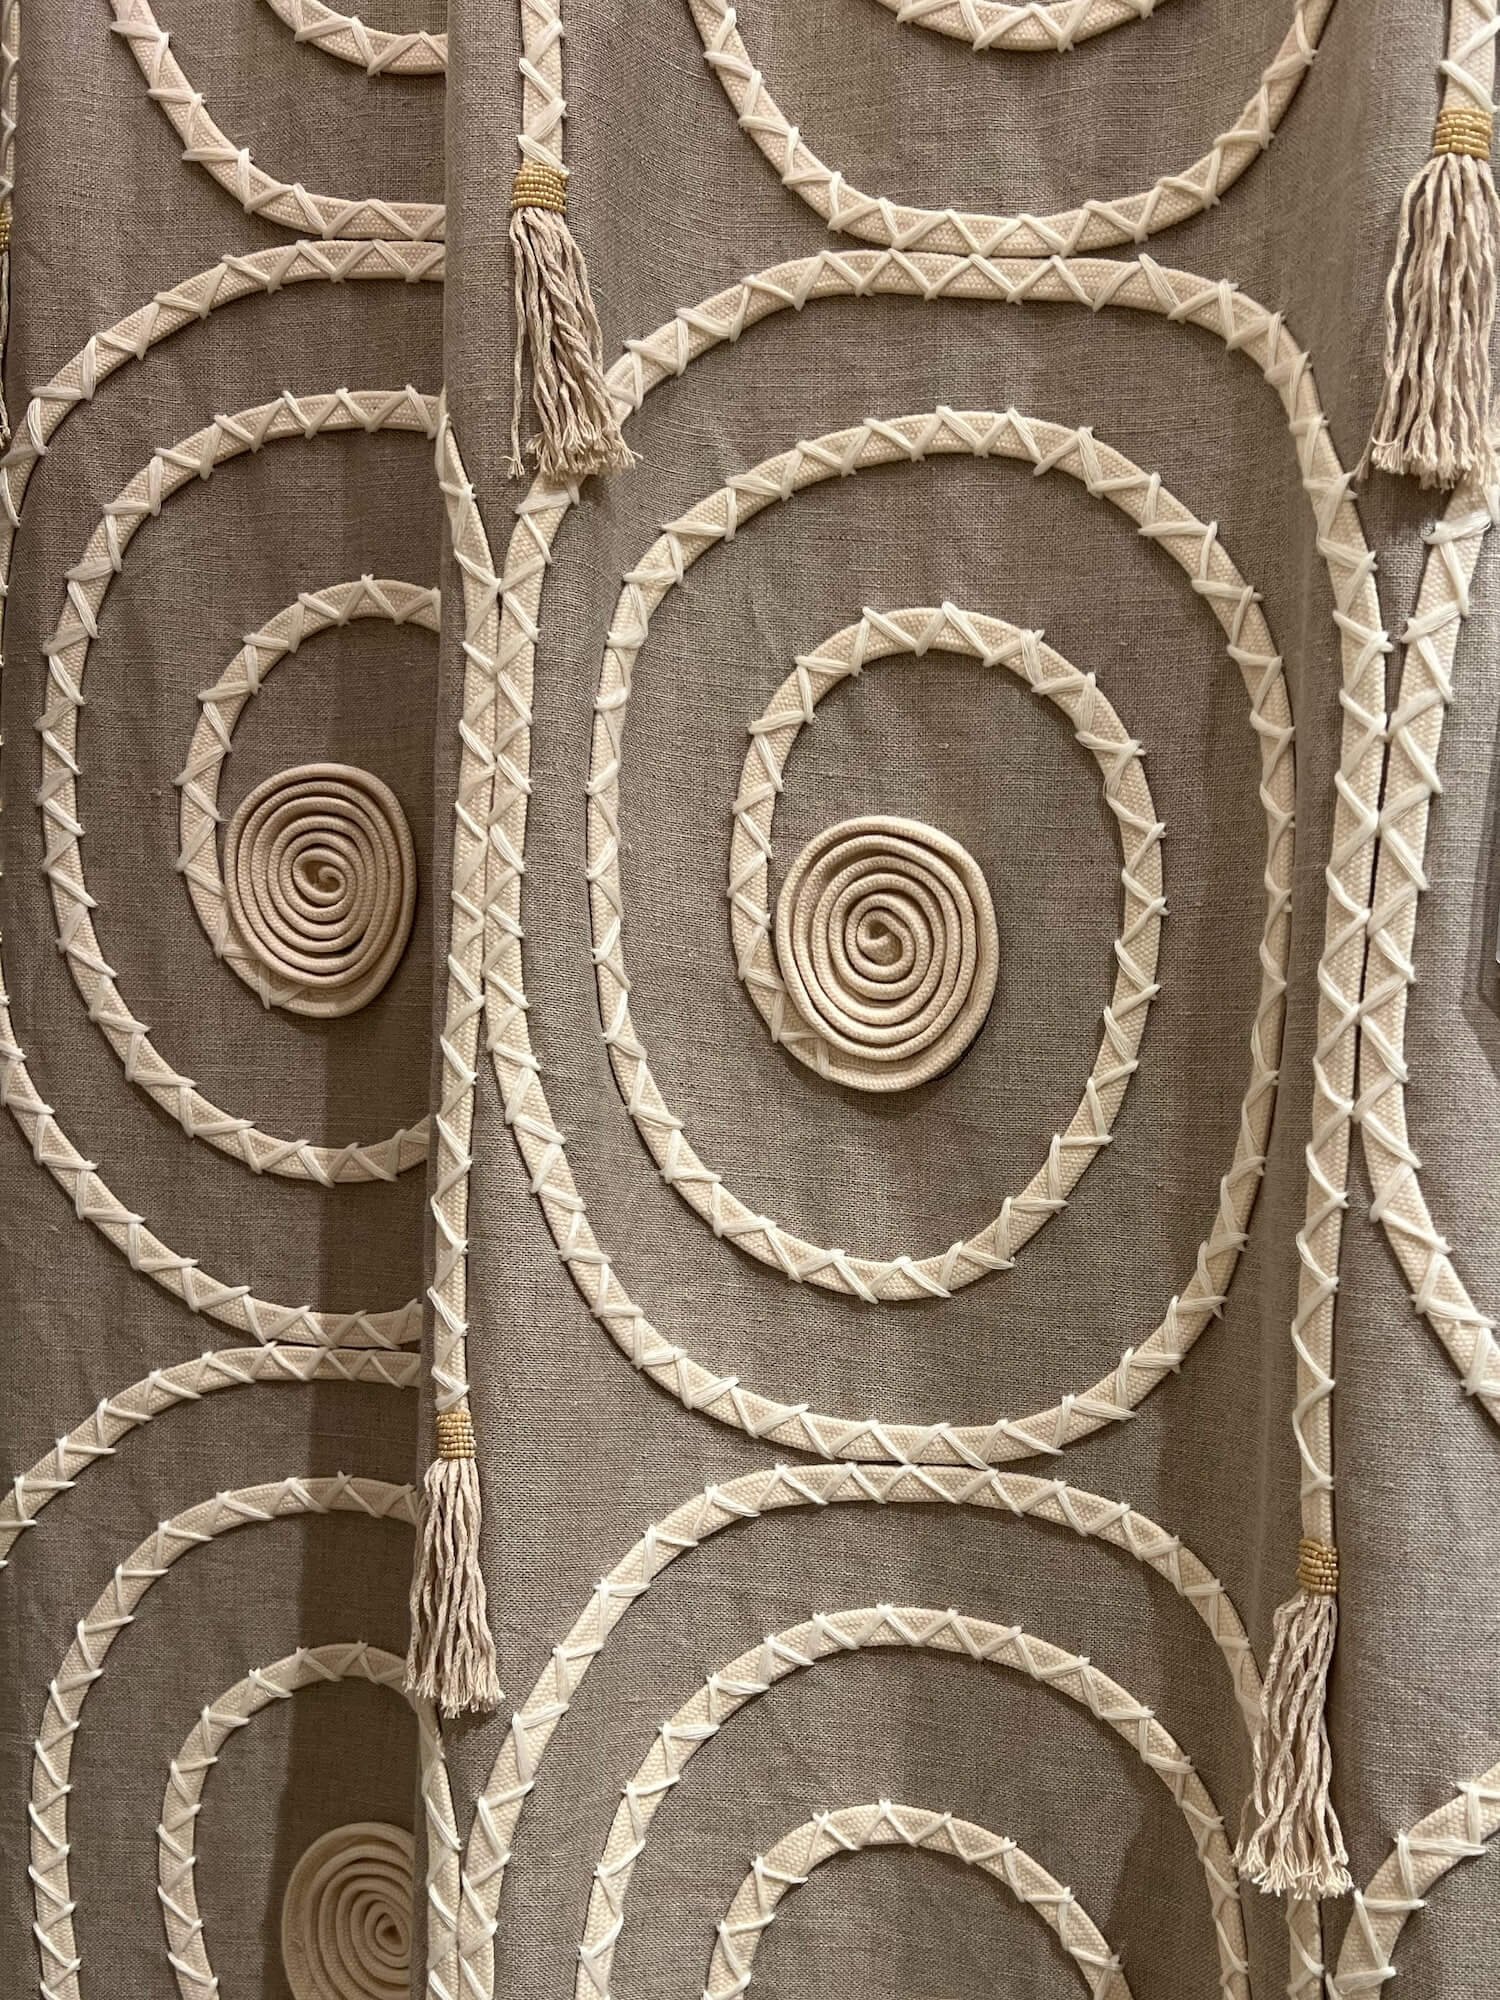 pierre frey textured fabric.JPG